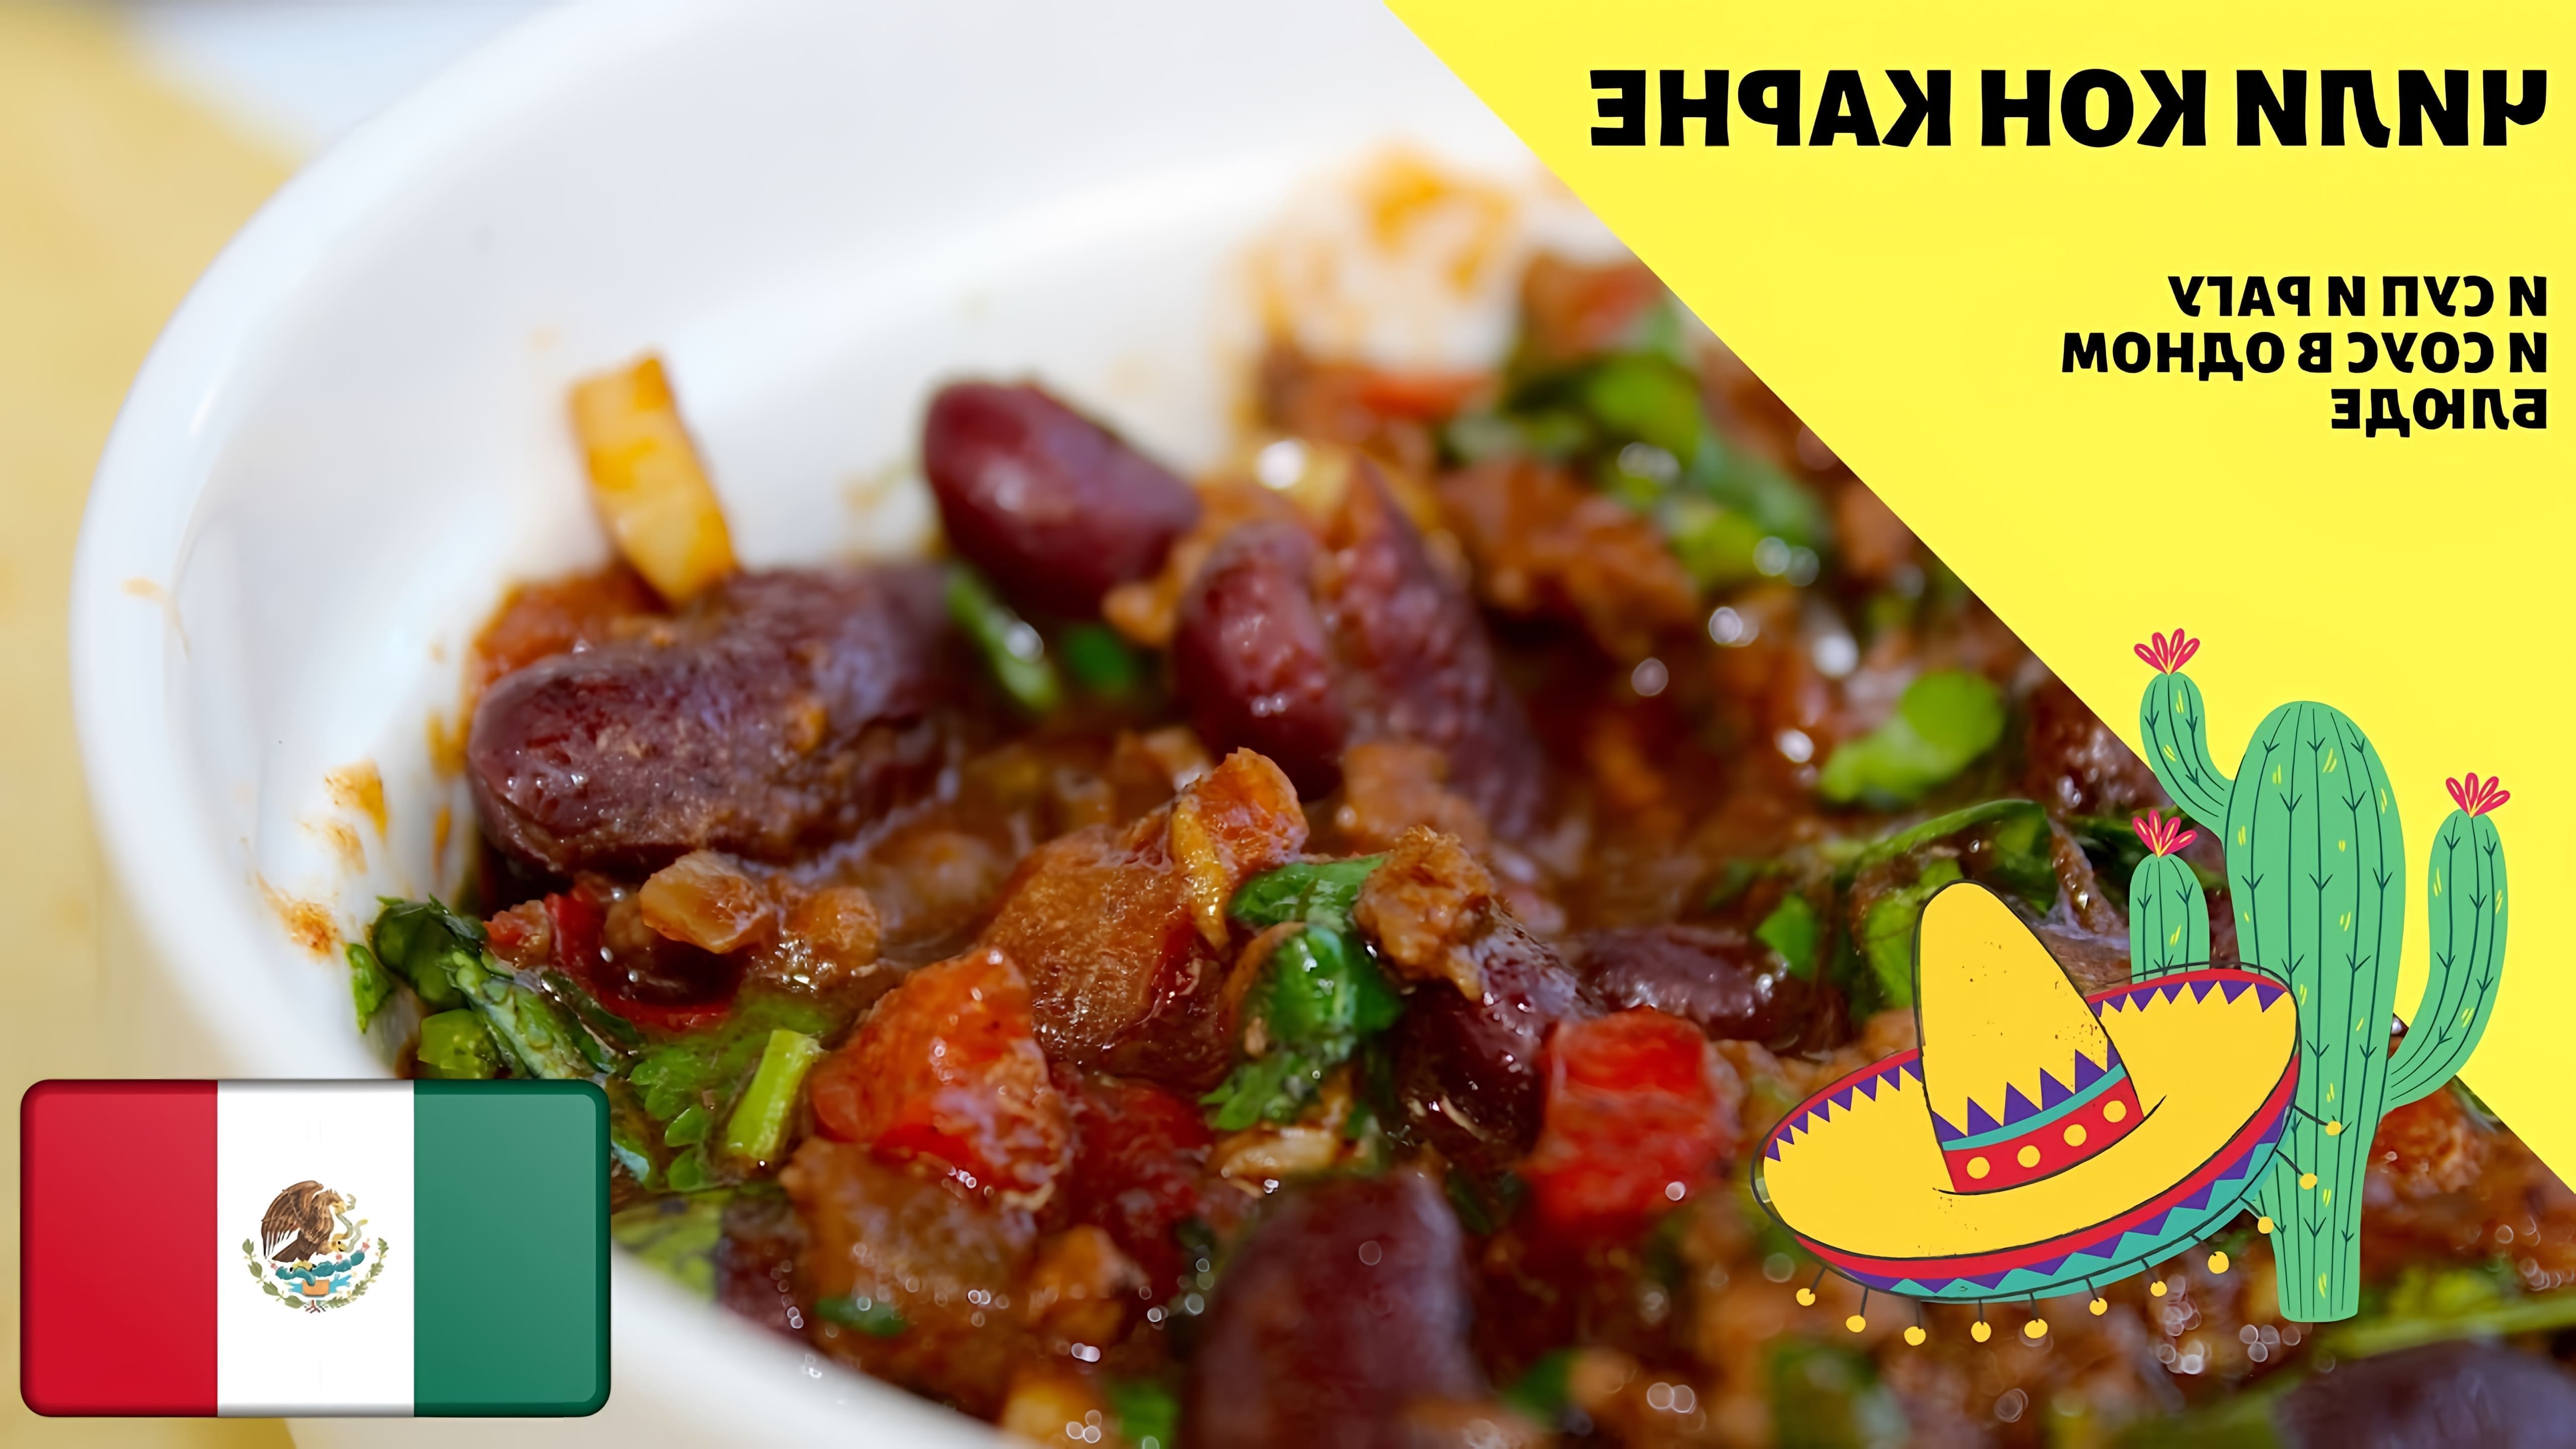 Видео рассказывает о мексиканском блюде "Чили кон карне", которое может быть приготовлено как суп, рагу или соус